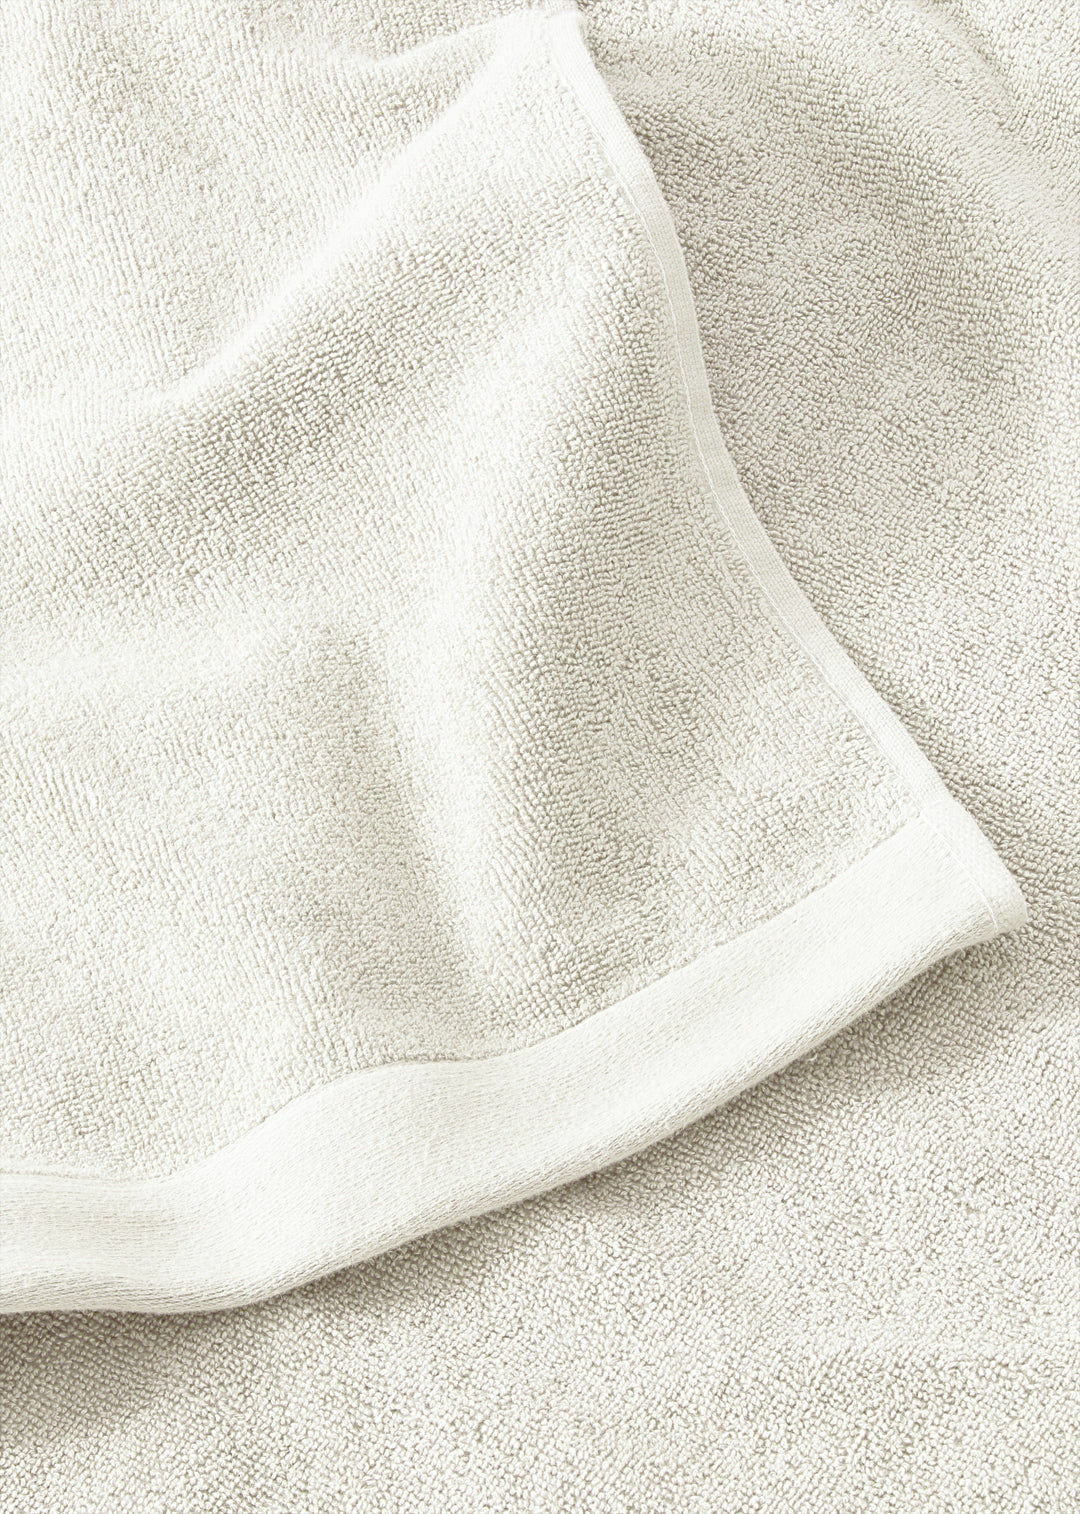 Handtuch Baumwolle Weiß 70 x 130 cm 2